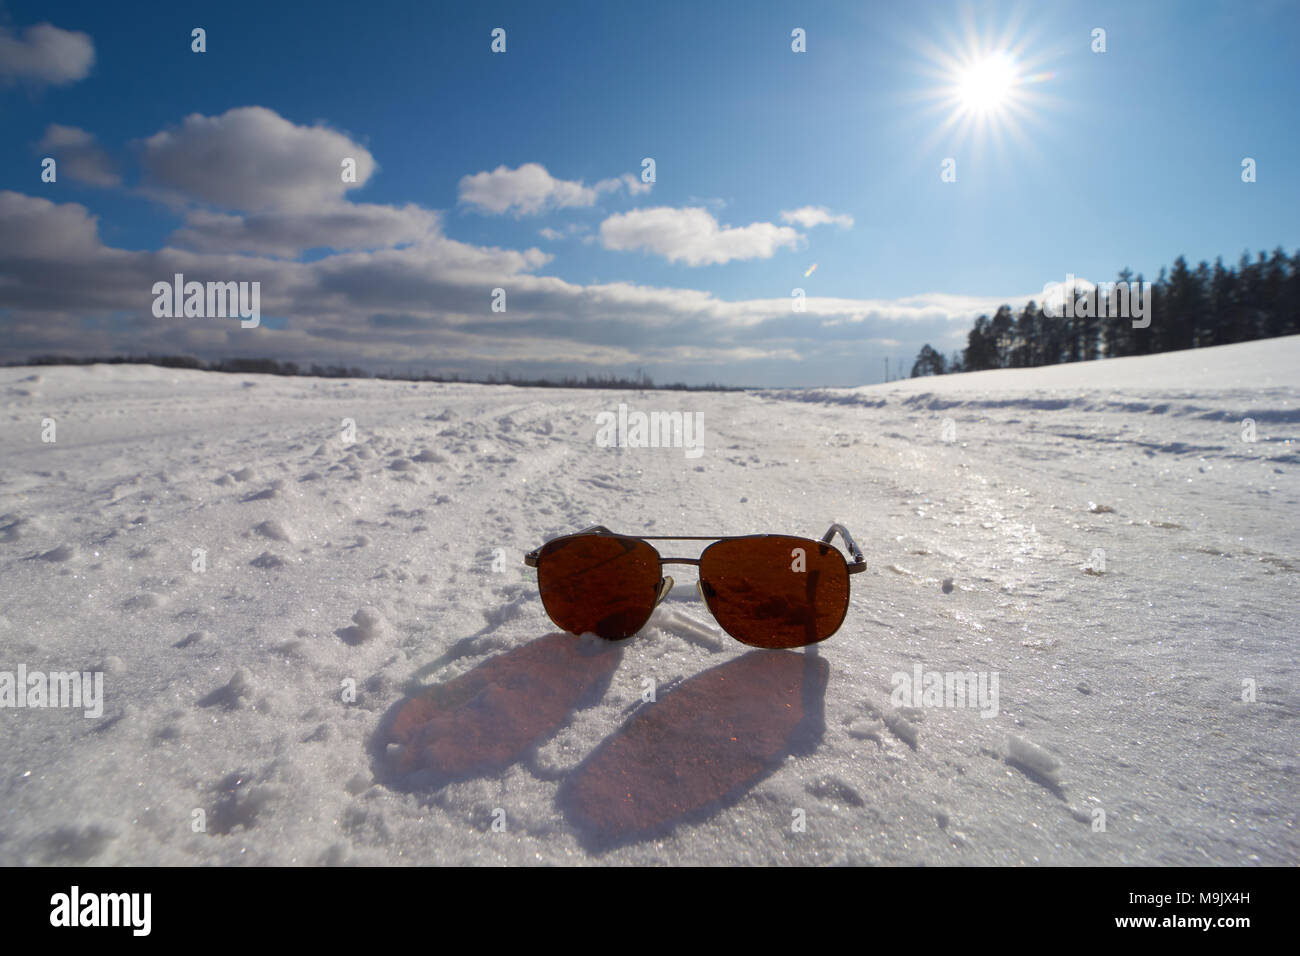 Occhiali da sole sulla neve con una bella e soleggiata scena invernale Foto Stock